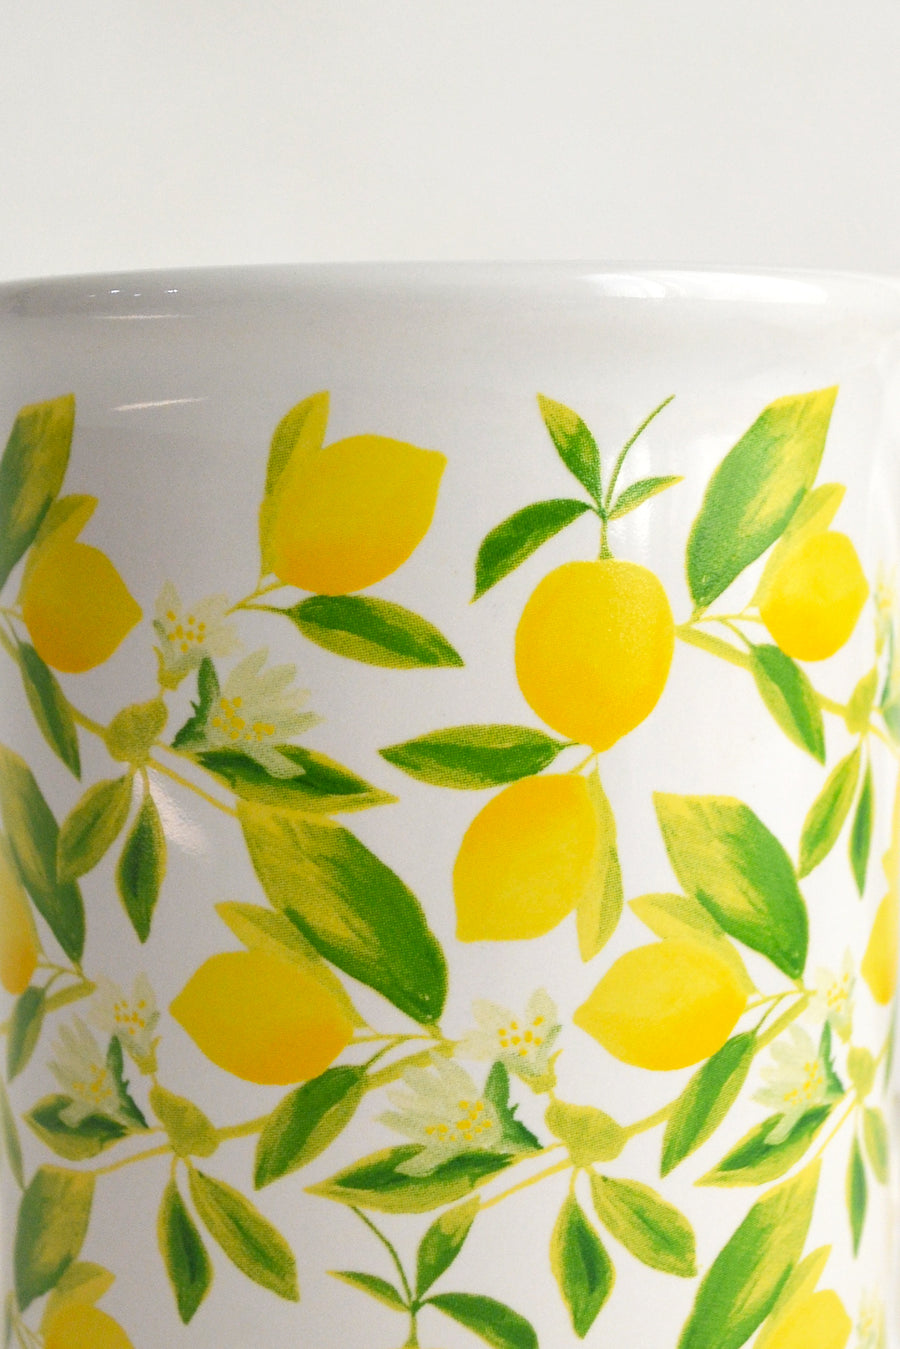 Lemon Ceramic Mug